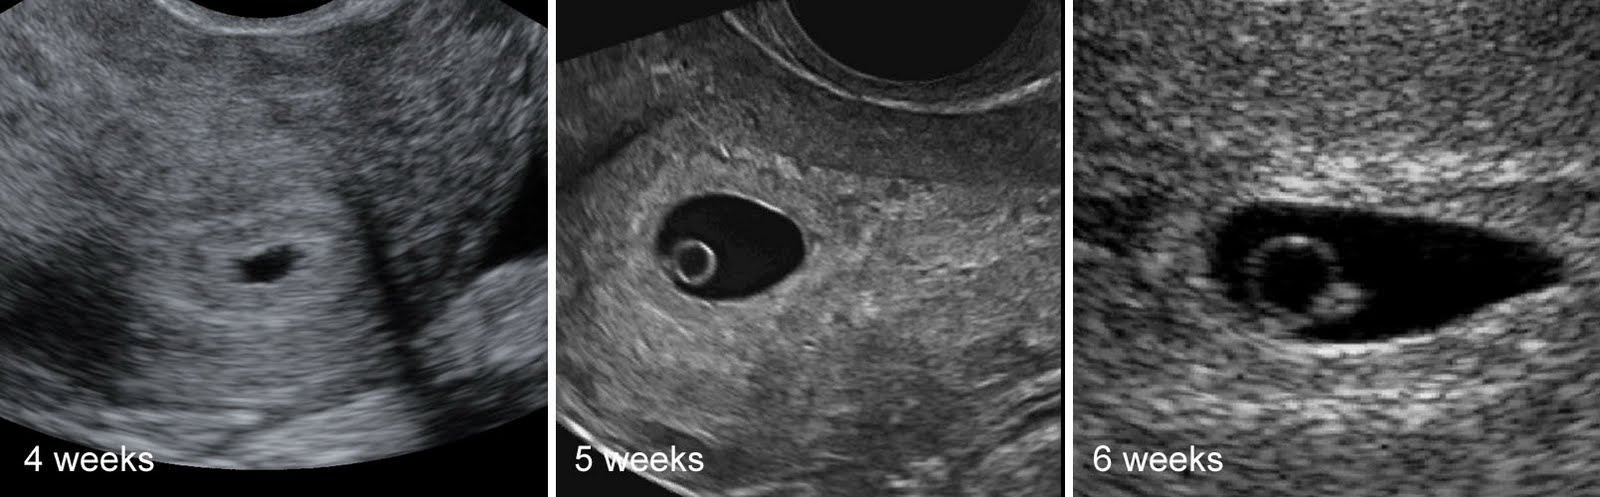 Курс 6 недель. 4 Эмбриональная неделя беременности УЗИ. Эмбрион на 5 неделе беременности УЗИ. Беременность 2-3 недели фото плода УЗИ. Эмбрион на 4 неделе беременности УЗИ.